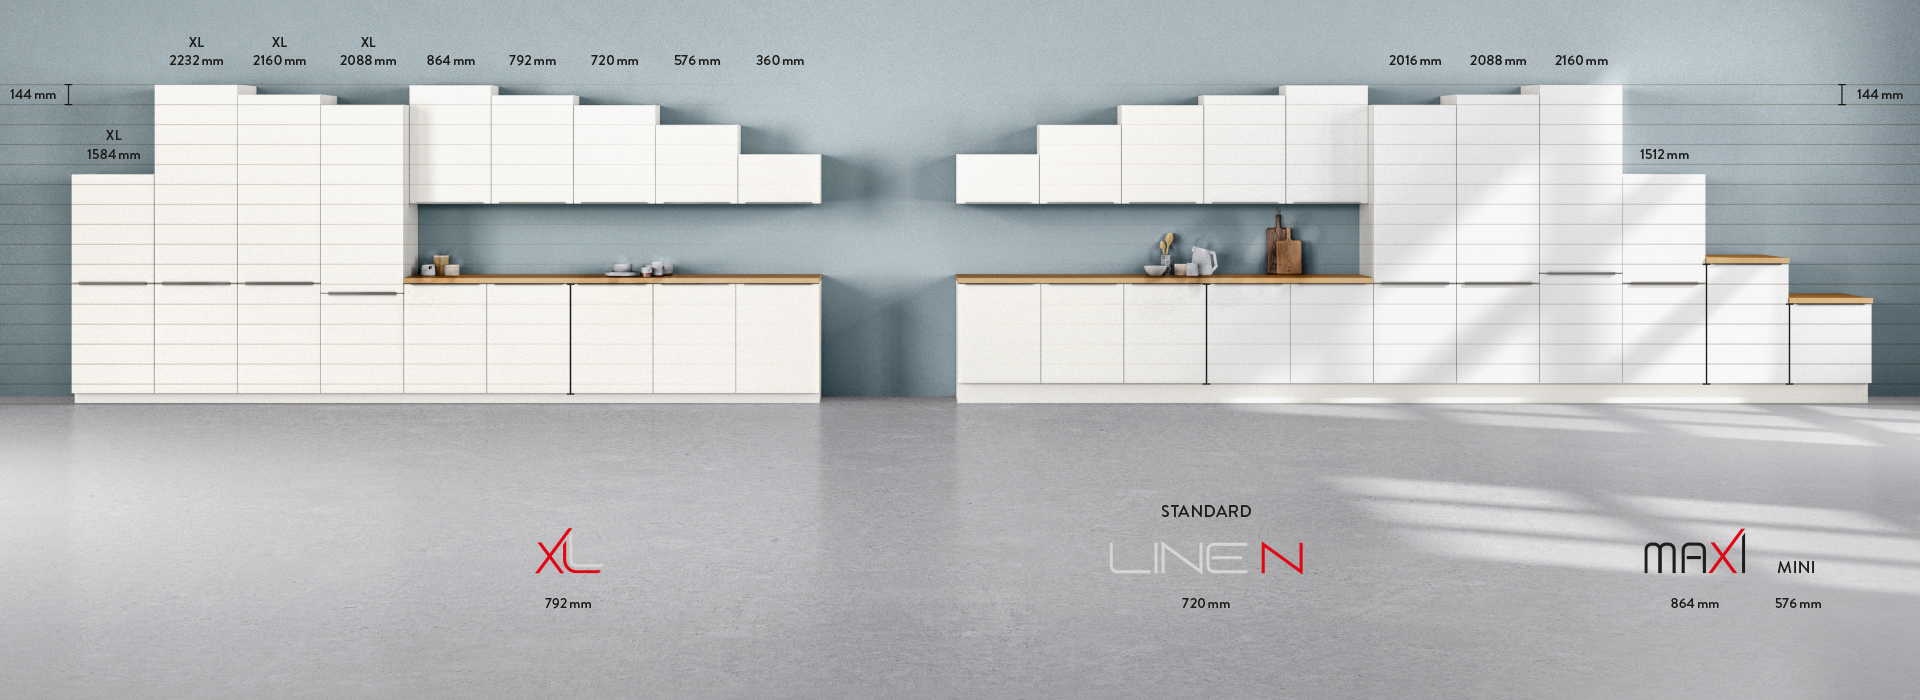 Interior de cocina moderna que muestra gabinetes blancos minimalistas con dimensiones, enfatizando la eficiencia del espacio y la estética del diseño contemporáneo.